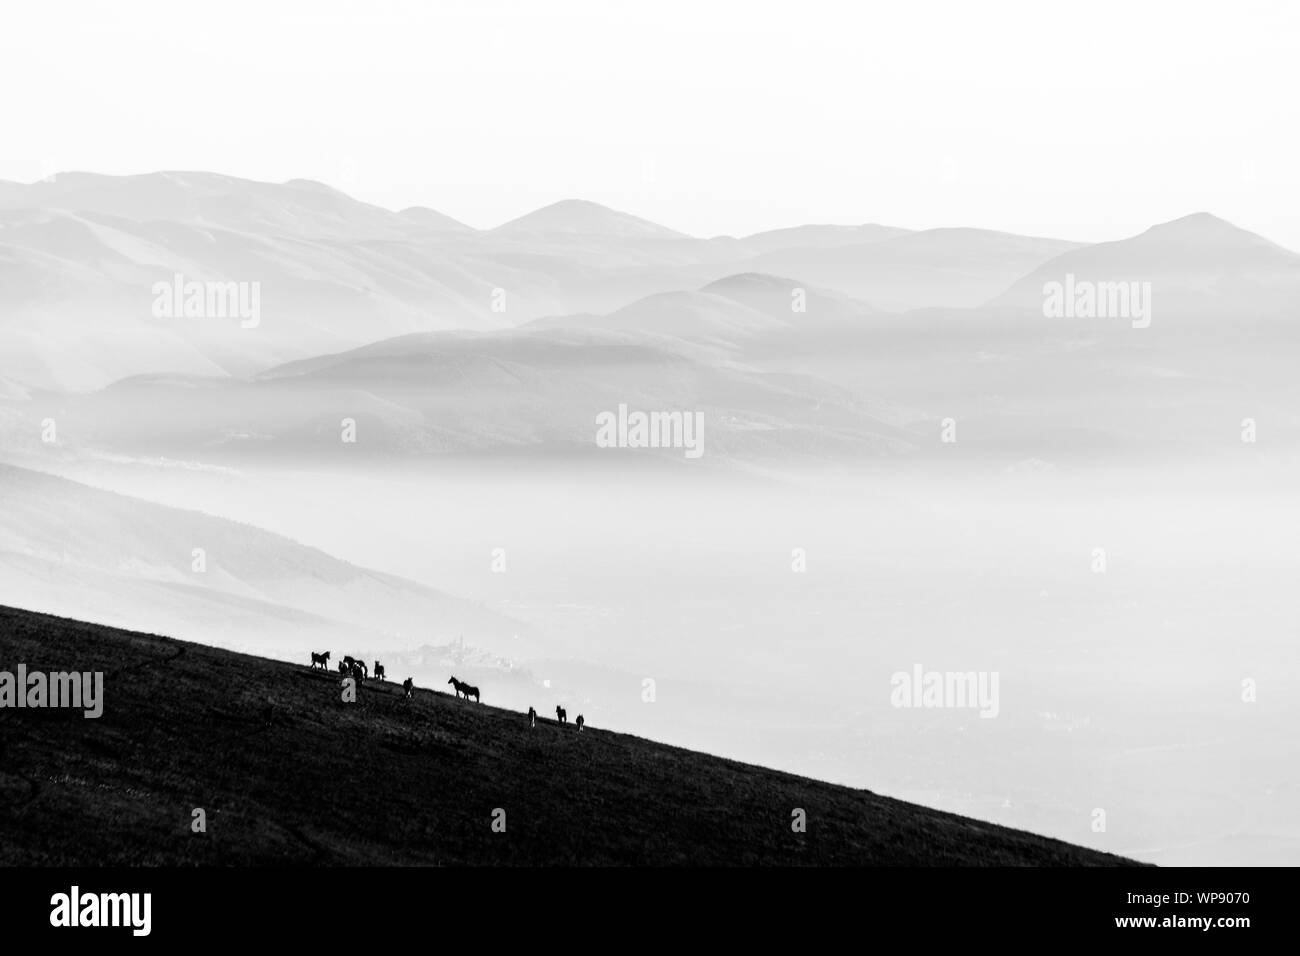 Certains chevaux silhouettes sur le dessus de la montagne Subasio, sur une mer de brume, le remplissage de la vallée de l'Ombrie Banque D'Images